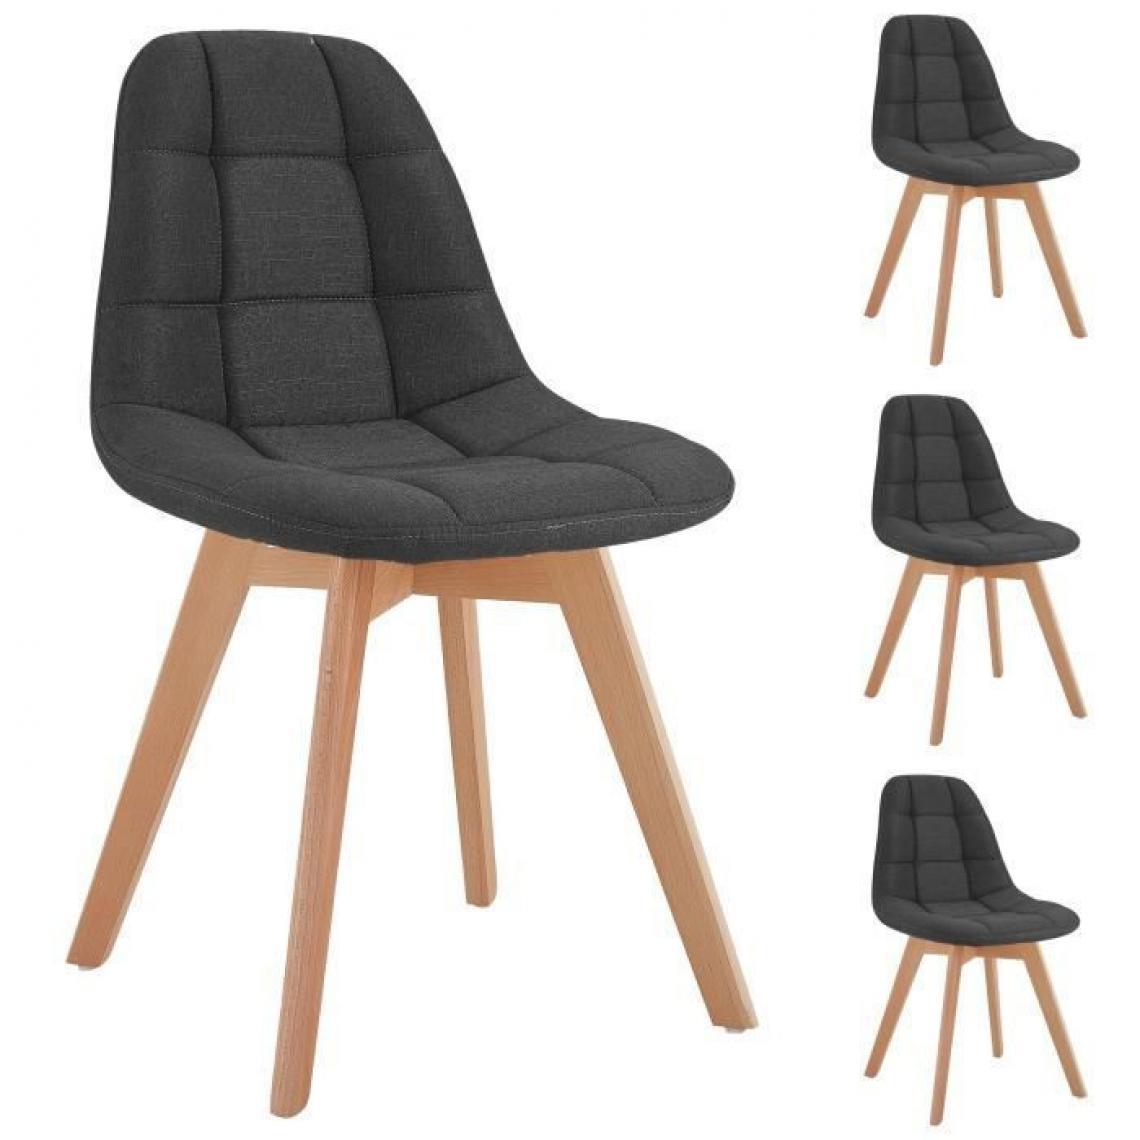 Sans Marque - ANYA Lot de 4 chaises - Tissu gris - Pied bois hetre massif naturel - L 44 x P 50 x H 84 cm - Chaises de jardin